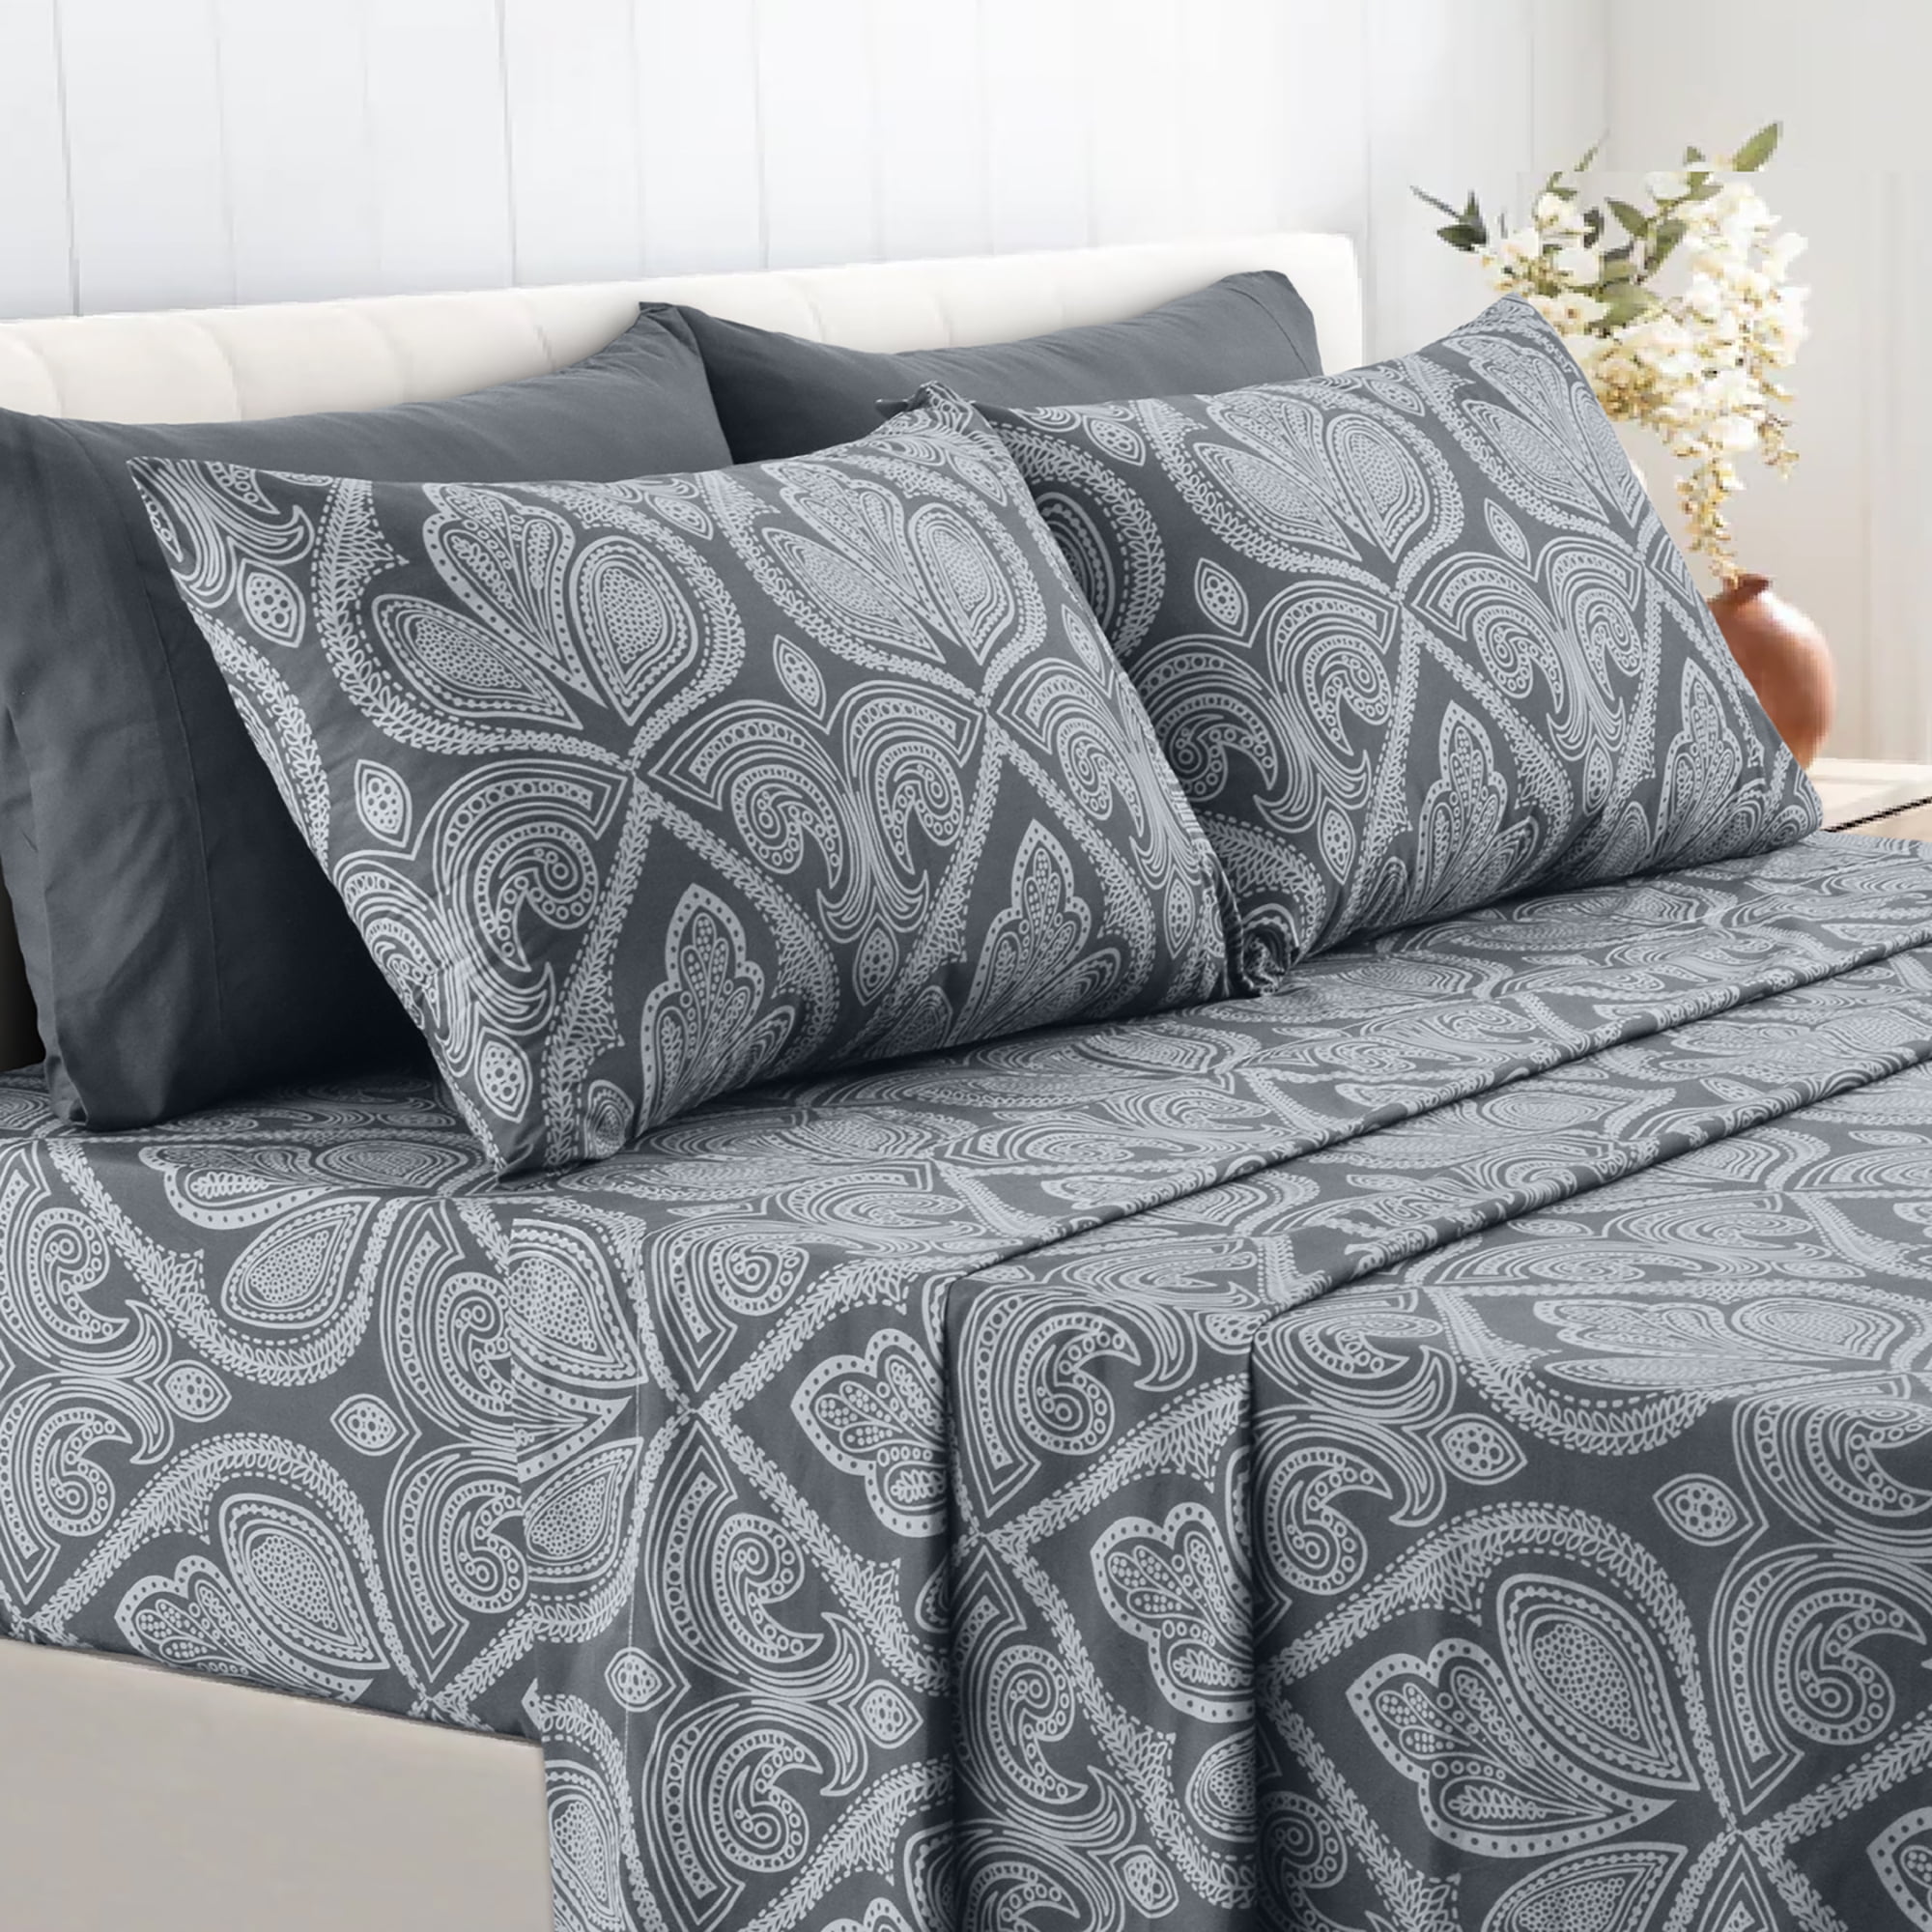 Details about   Modern Romantic Pillow Sham Decorative Pillowcase 3 Sizes Bedroom Decoration 